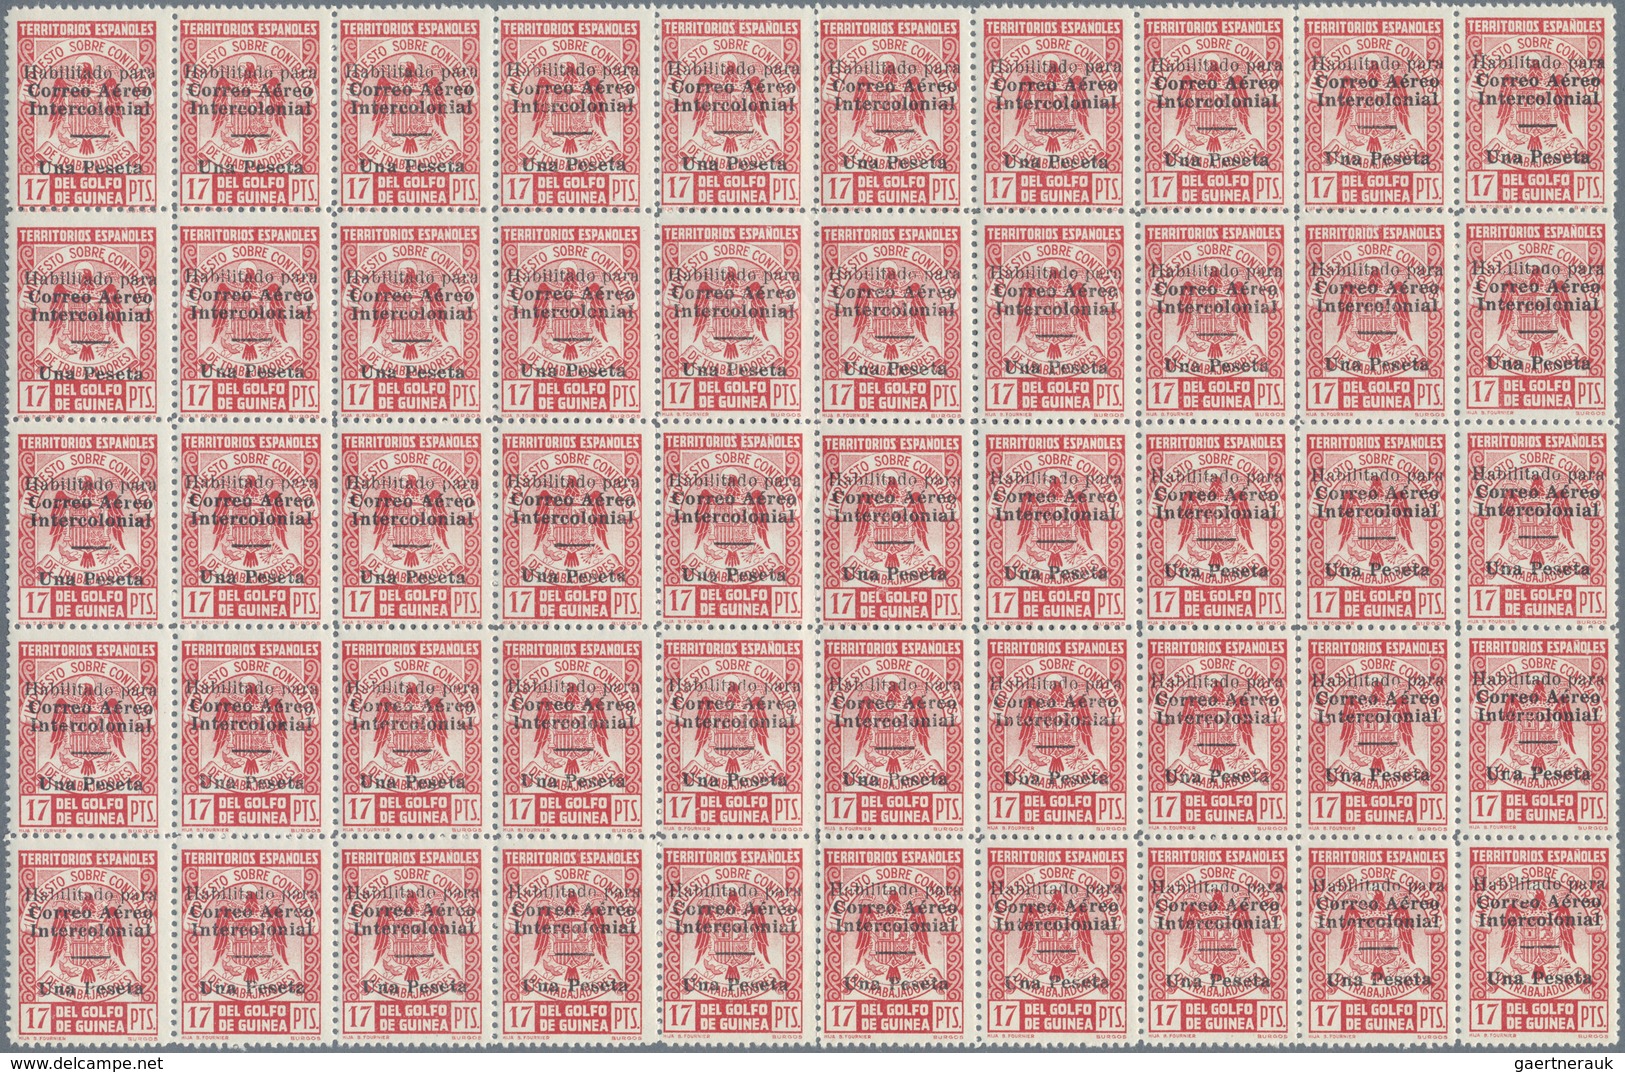 Spanische Besitzungen Im Golf Von Guinea: 1941, Fiscal Stamp 17pta. Carmine Used As Definitive Issue - Spanish Guinea